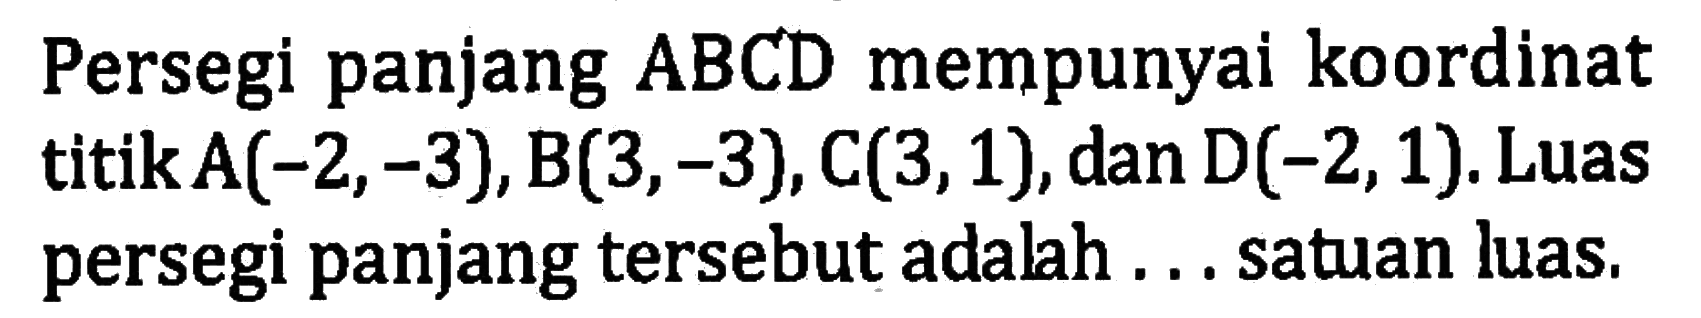 Persegi panjang ABCD mempunyai koordinat titik A(-2,-3),B(3,-3),C(3,1),dan D(-2,1). Luas persegi panjang tersebut adalah... satuan luas,